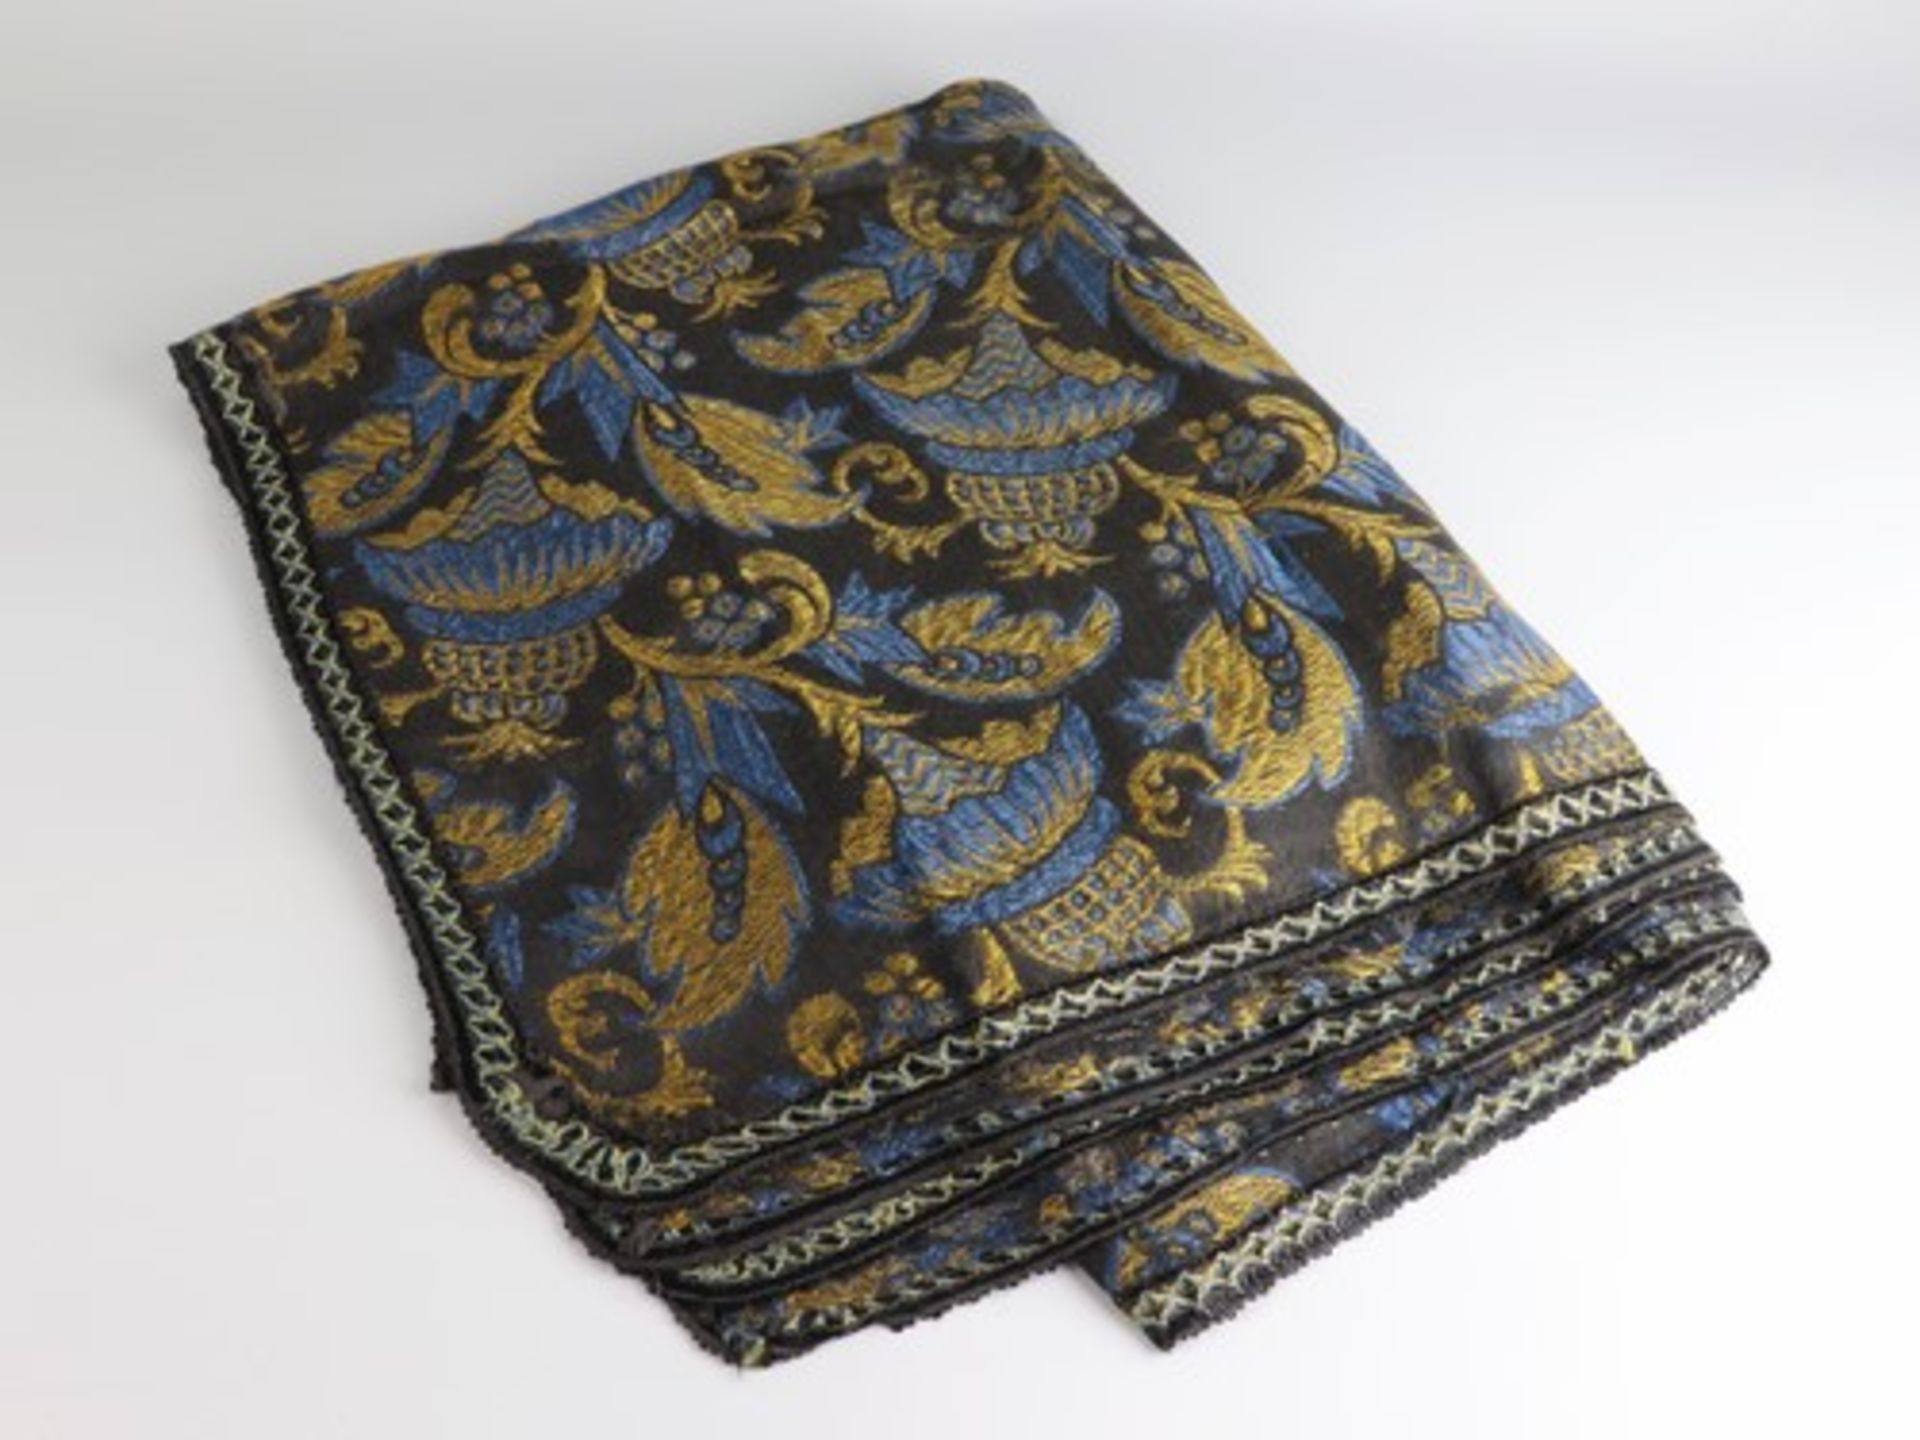 Tischdecke - Art-découm 1920, schwarz, gold, blau, orientalisch anmutendes florales Muster,